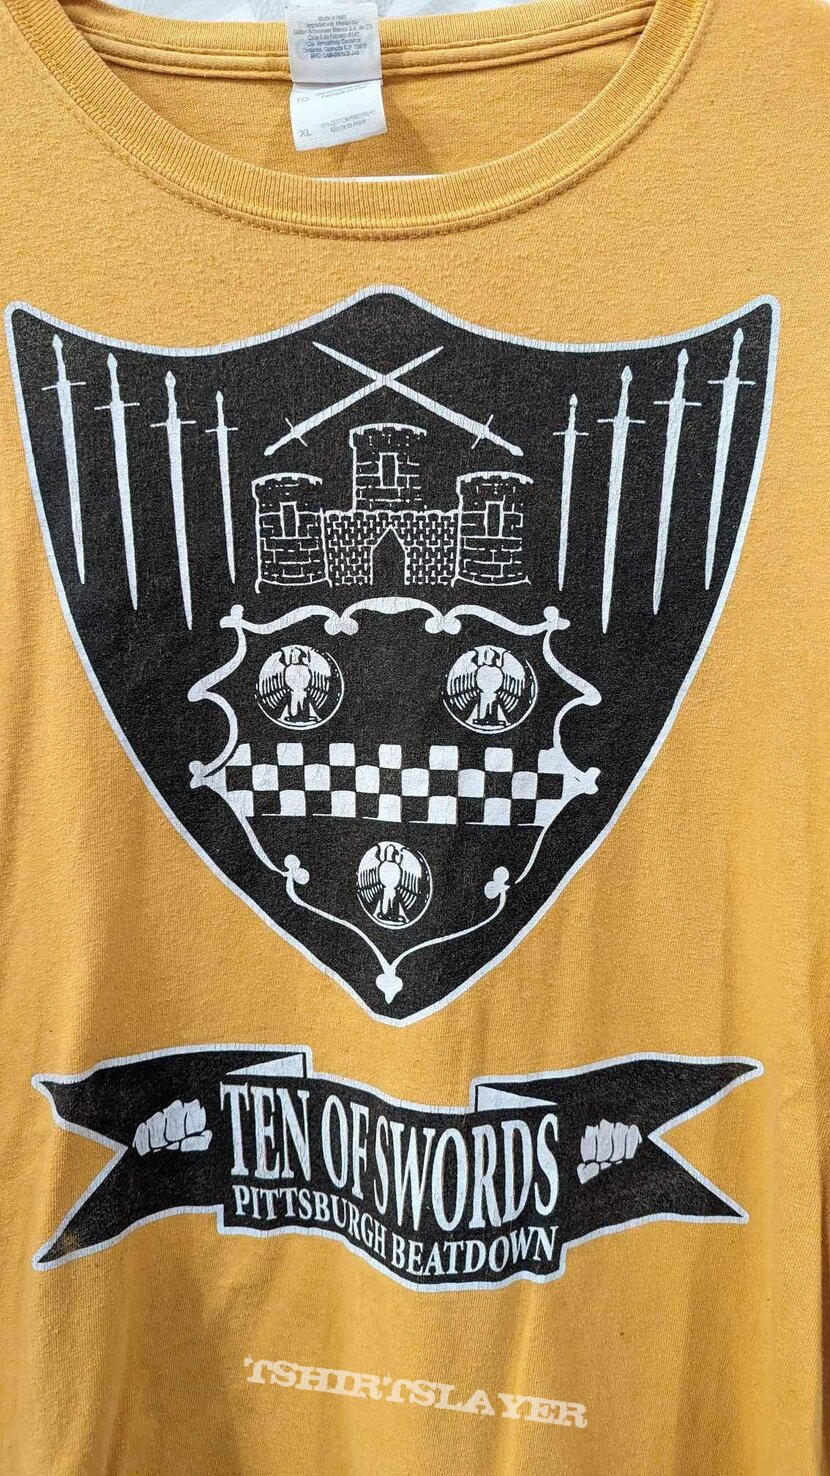 Ten of Swords Pittsburgh hardcore shirt